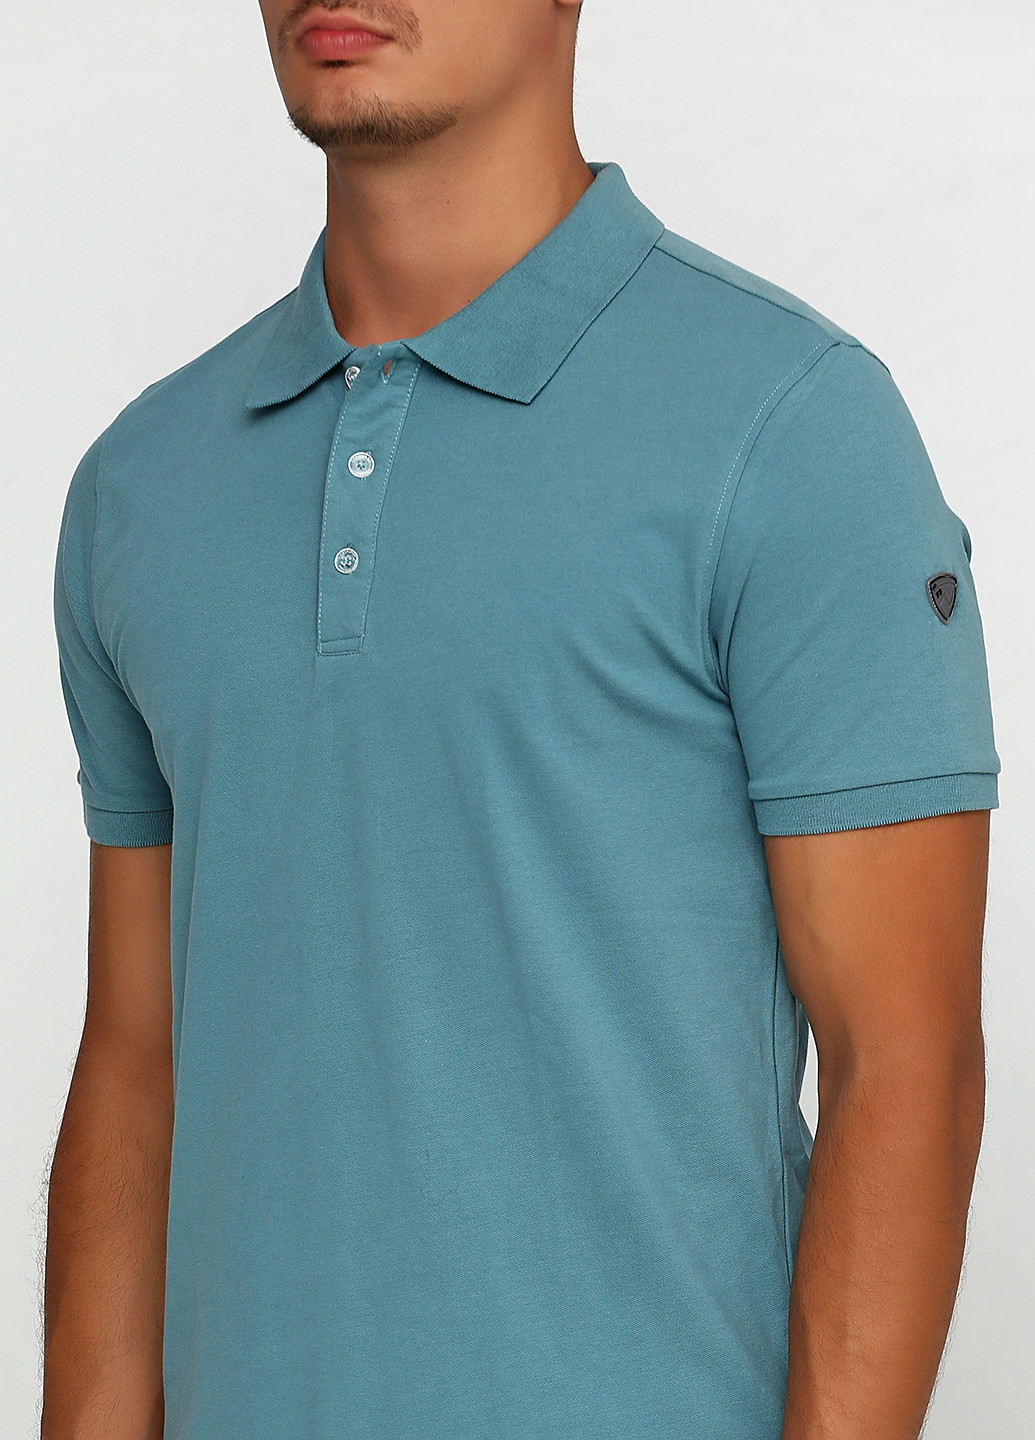 Голубой футболка-поло для мужчин Northland однотонная